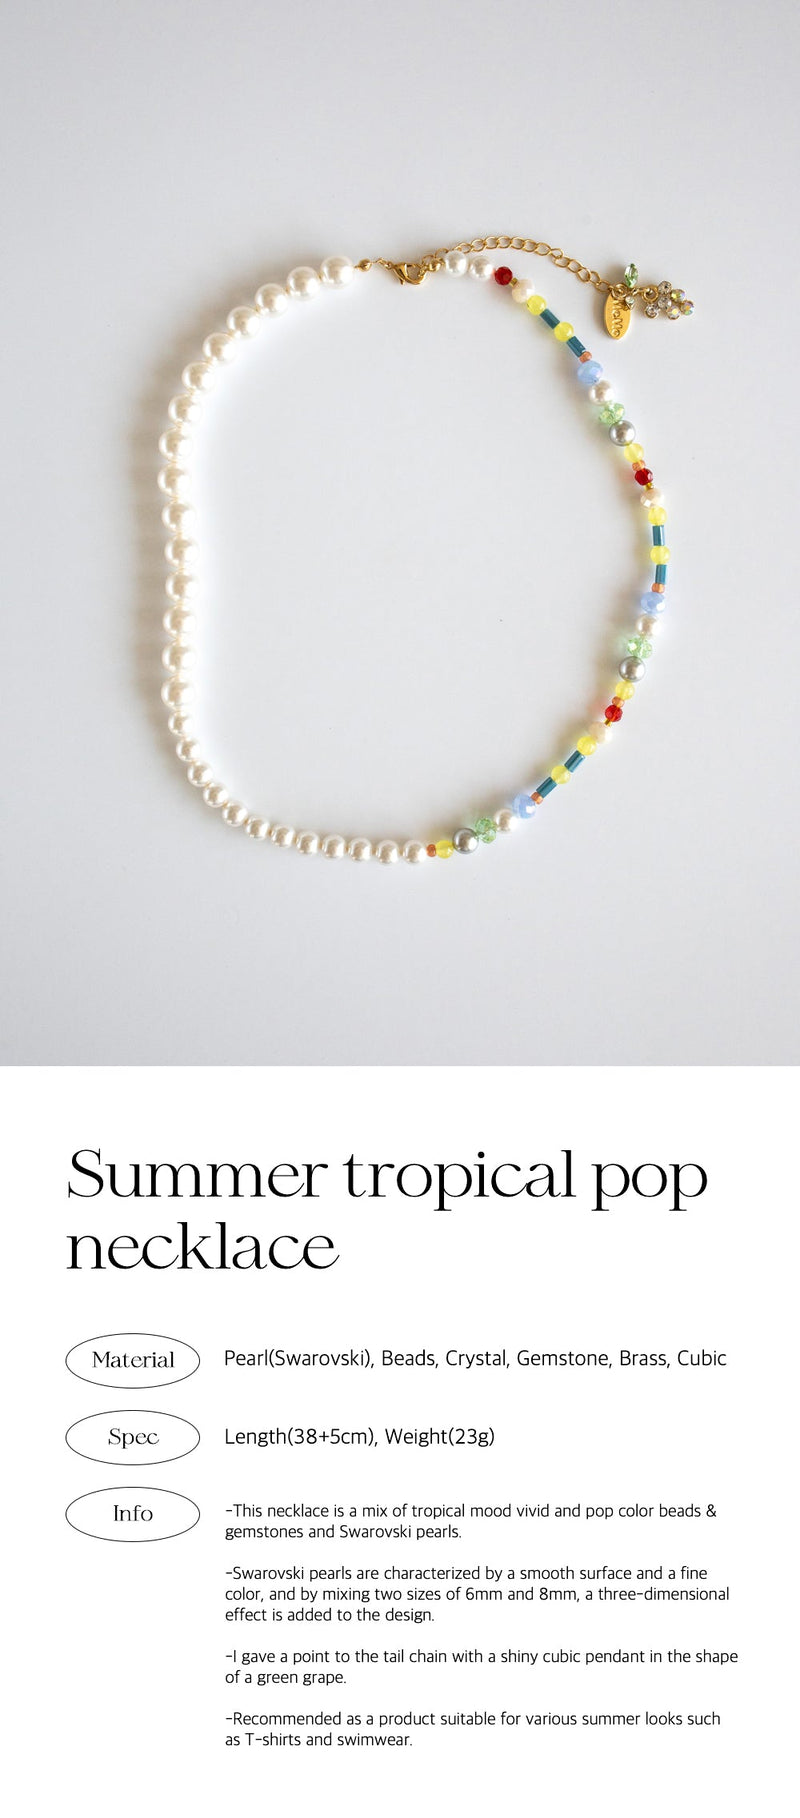 サマートロピカルポップネックレス/Summer tropical pop necklace